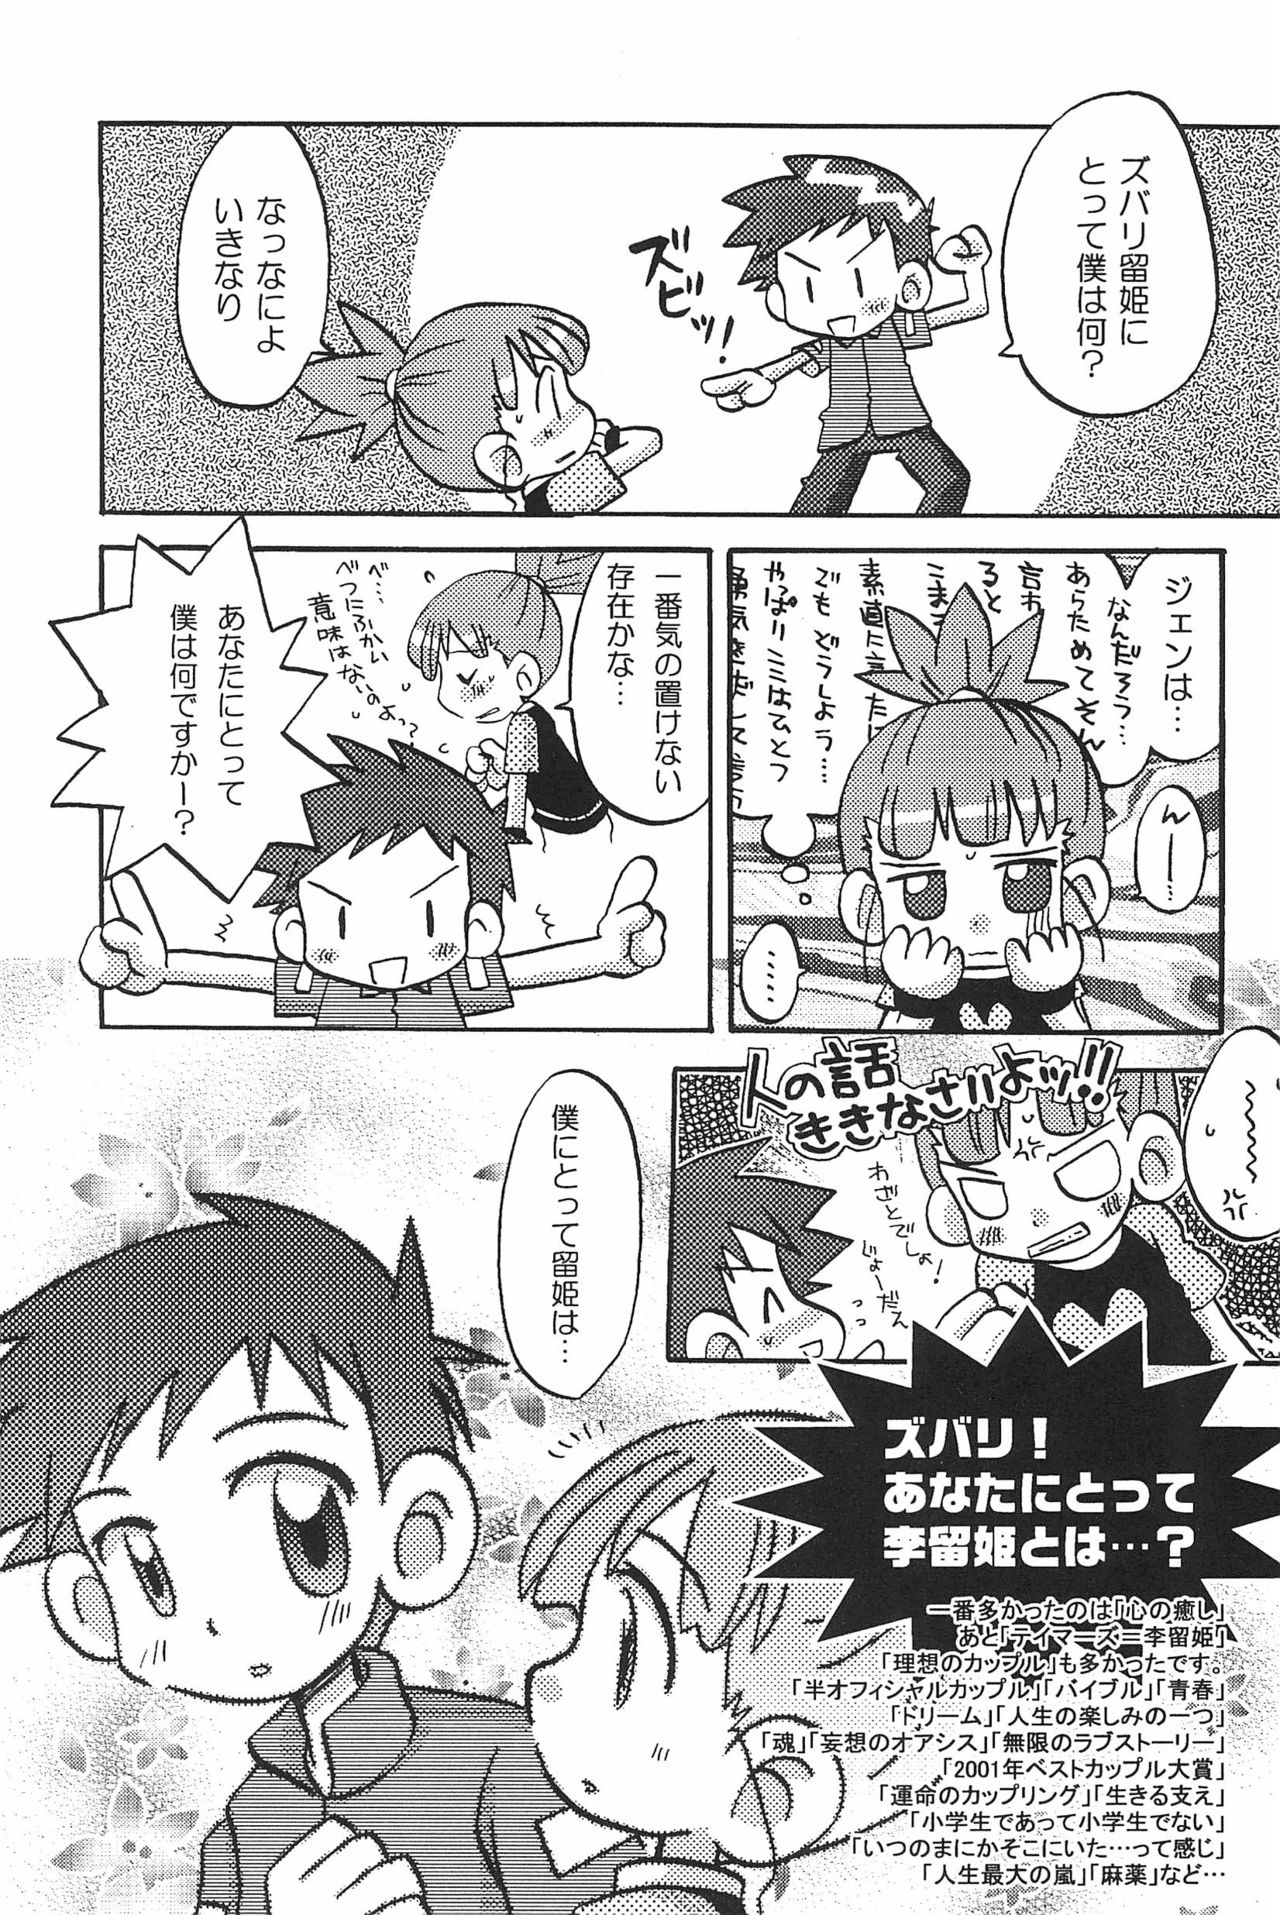 (SC15) [LeeRuki Anthology Jikkou Iinkai (Various)] LeeRuki Anthology J&R REPORT (Digimon Tamers) 48